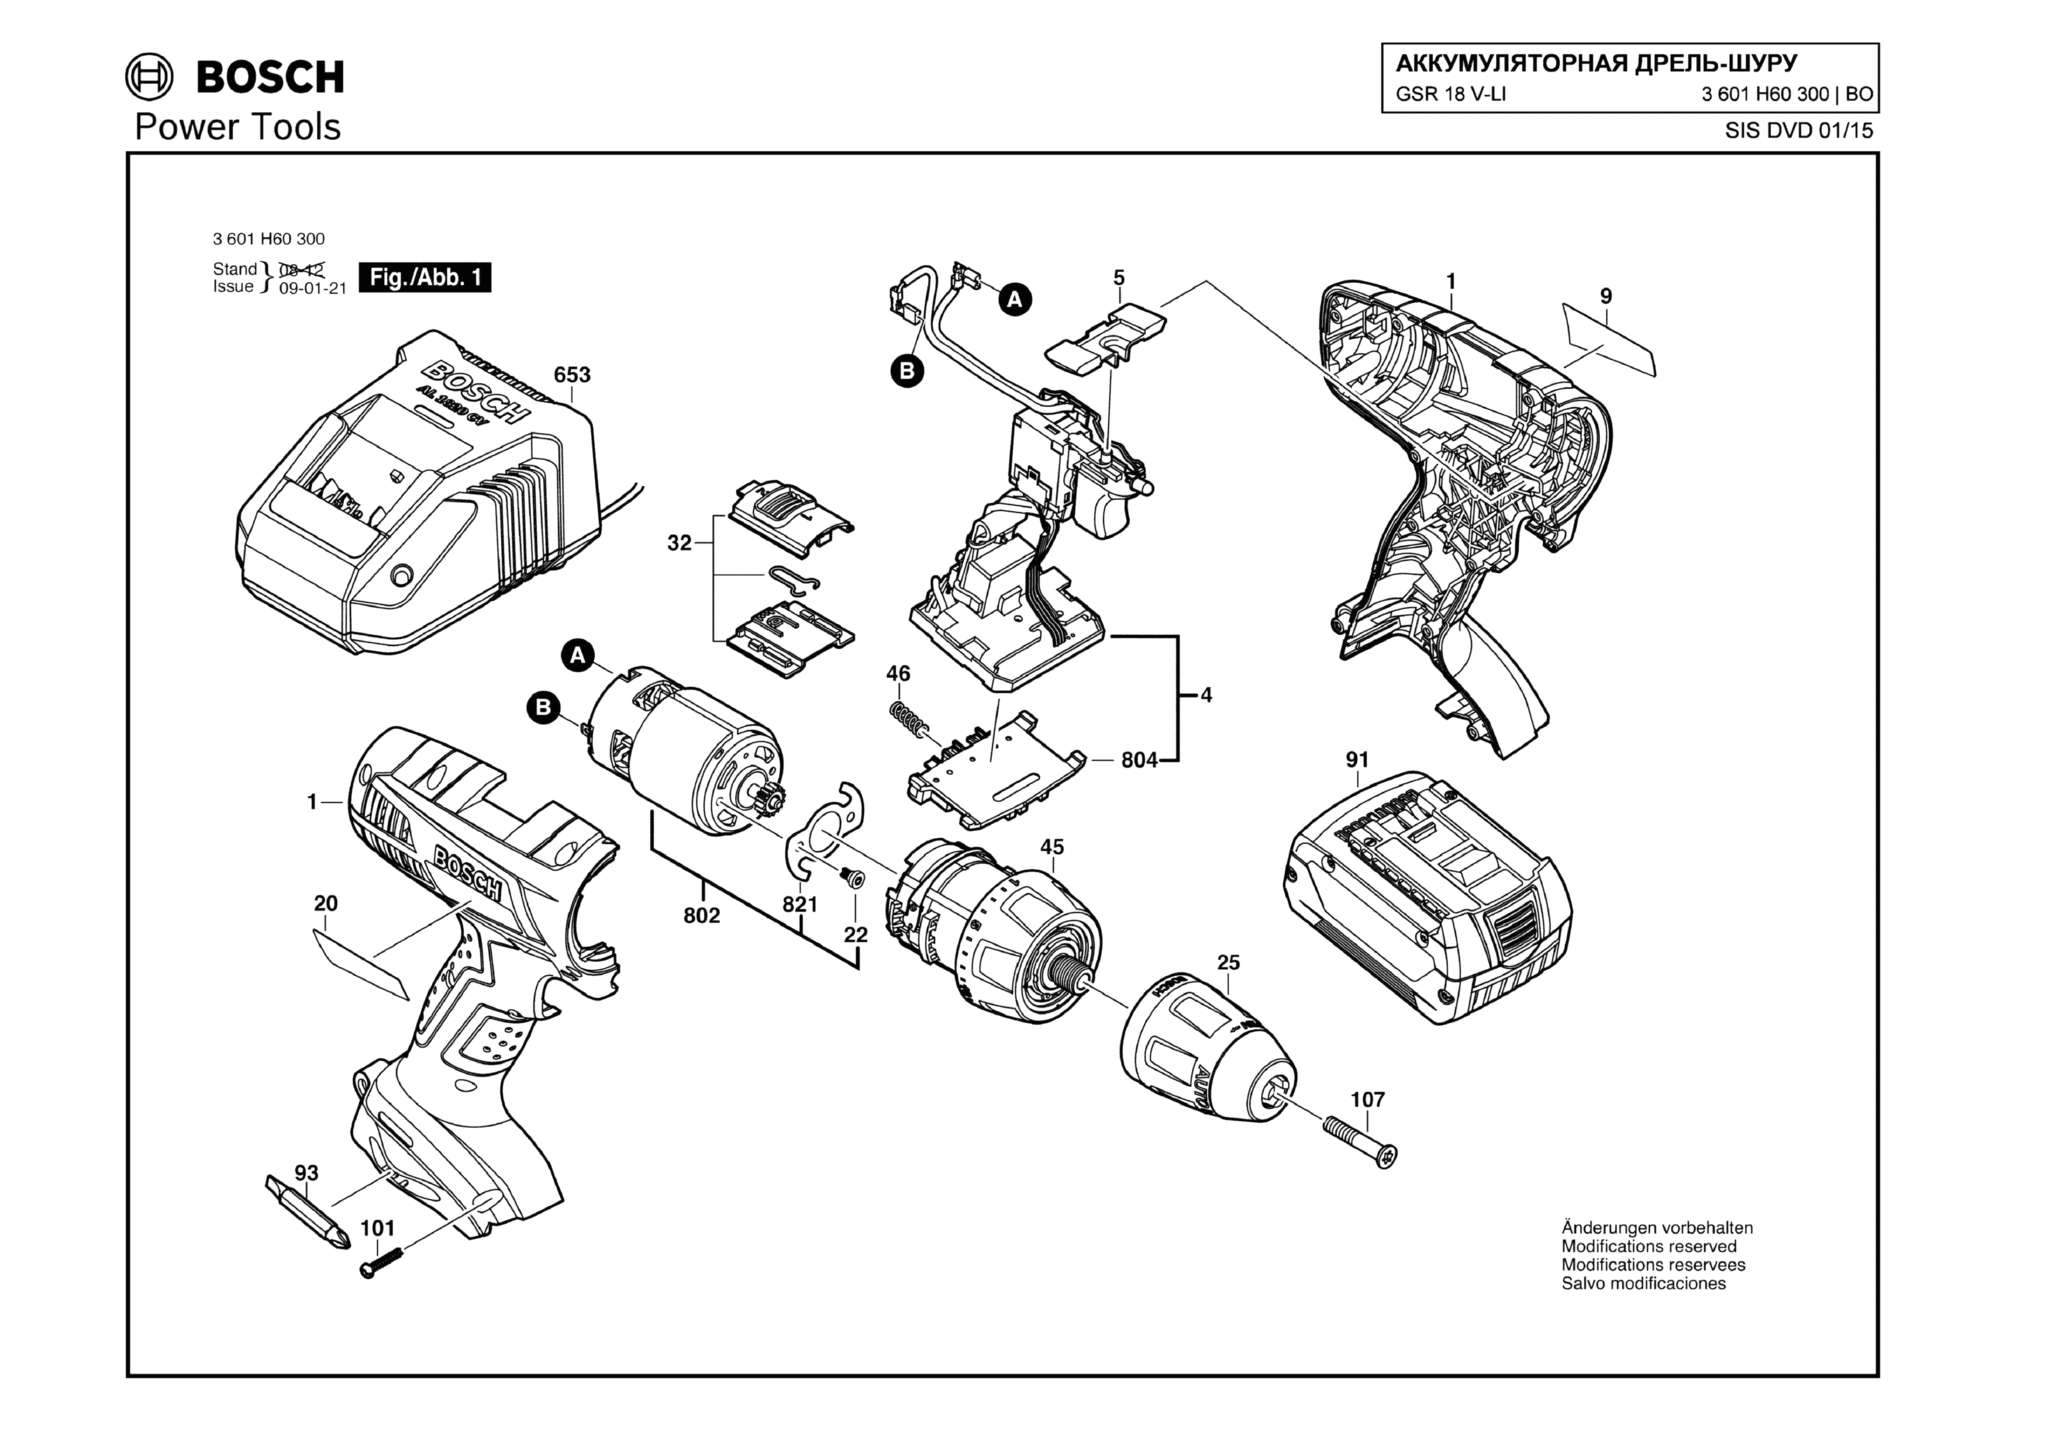 Запчасти, схема и деталировка Bosch GSR 18 V-LI (ТИП 3601H60300)